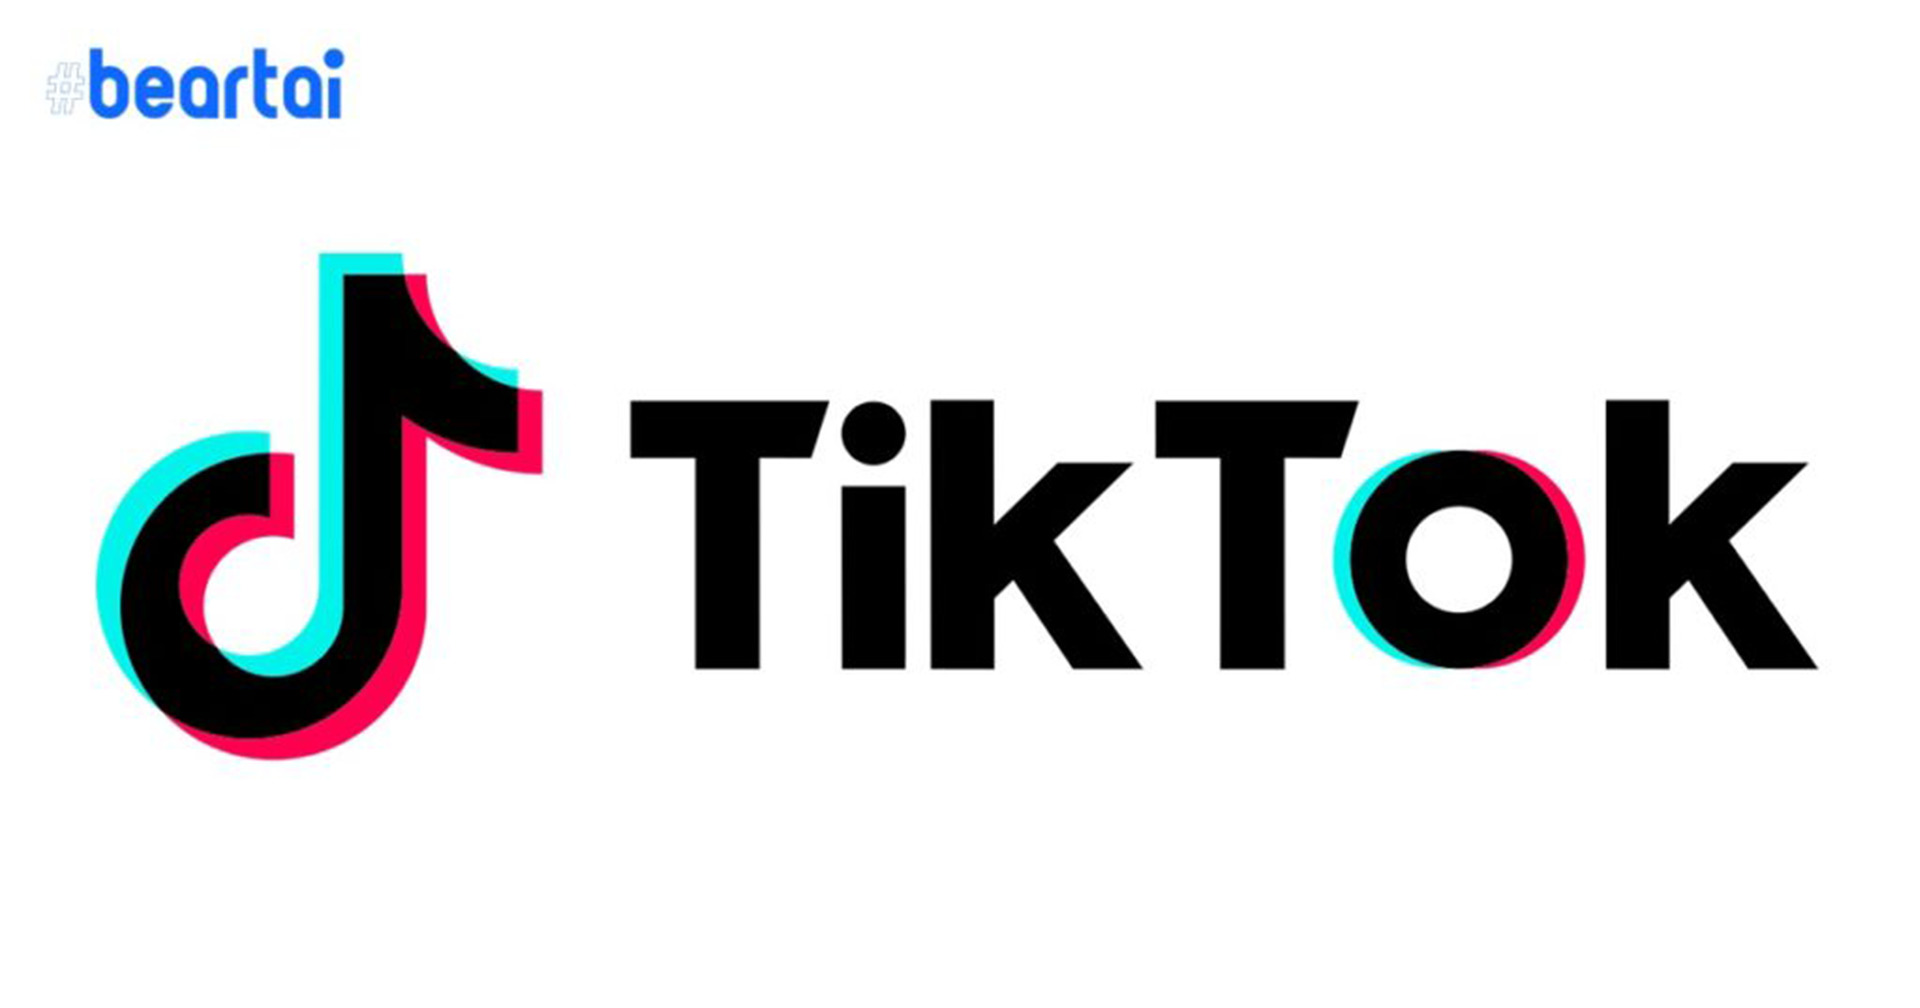 TikTok ออก Project Clover เพื่อย้ายข้อมูลผู้ใช้ยุโรปไว้ในยุโรป ลดแรงเสียดทานจากรัฐบาลประเทศต่าง ๆ